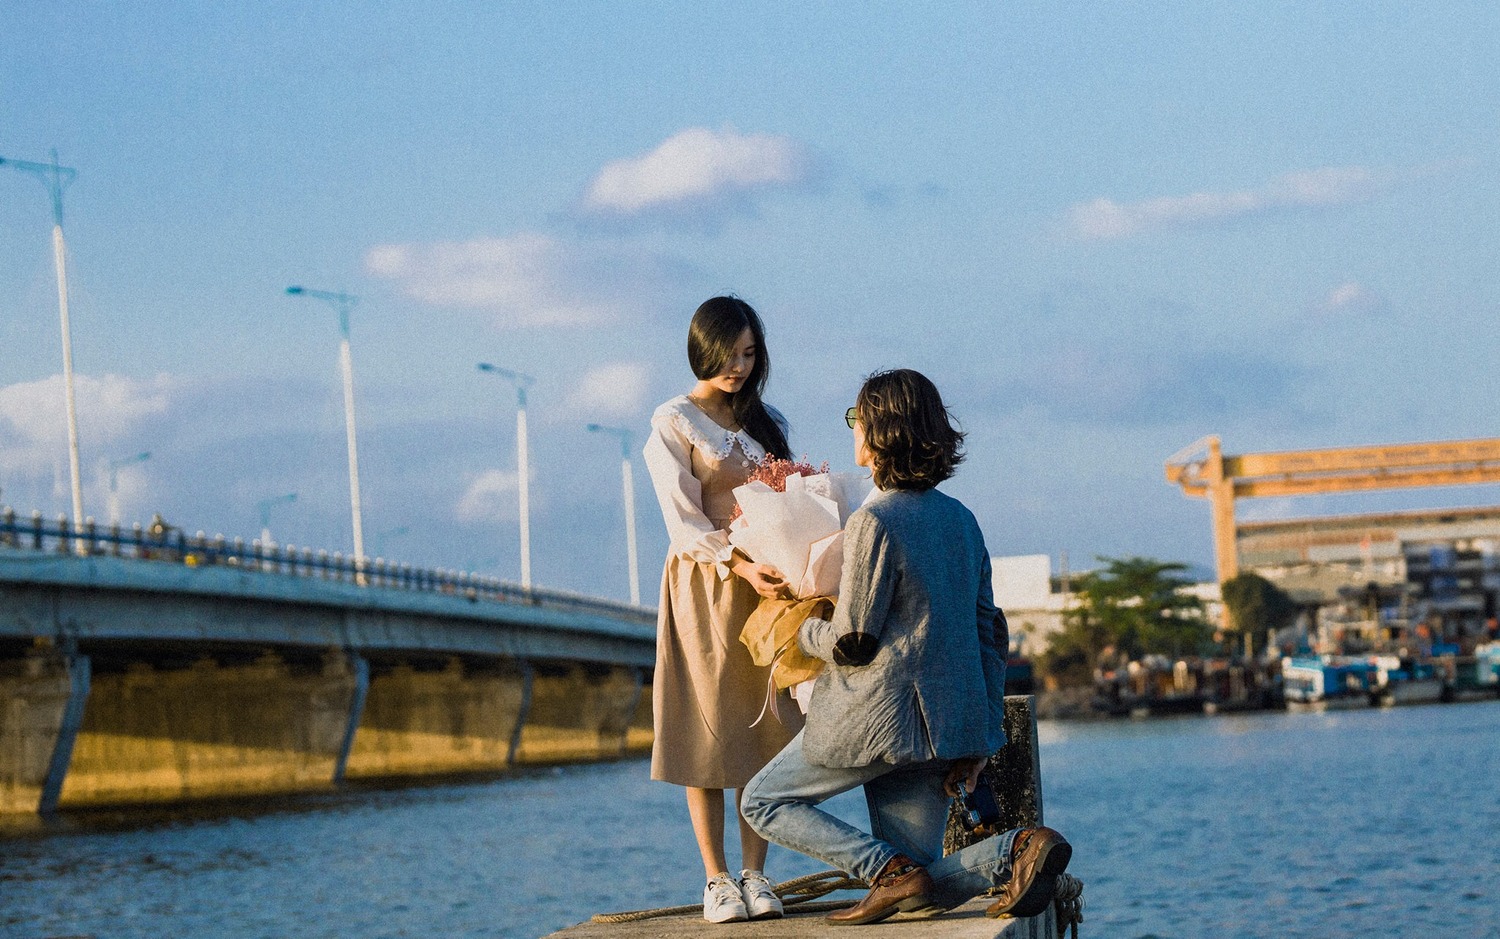 Tìm phút bình yên, lãng mạn qua ống kính anh chàng Kỳ Sang tại cầu Bình Tân Nha Trang 11